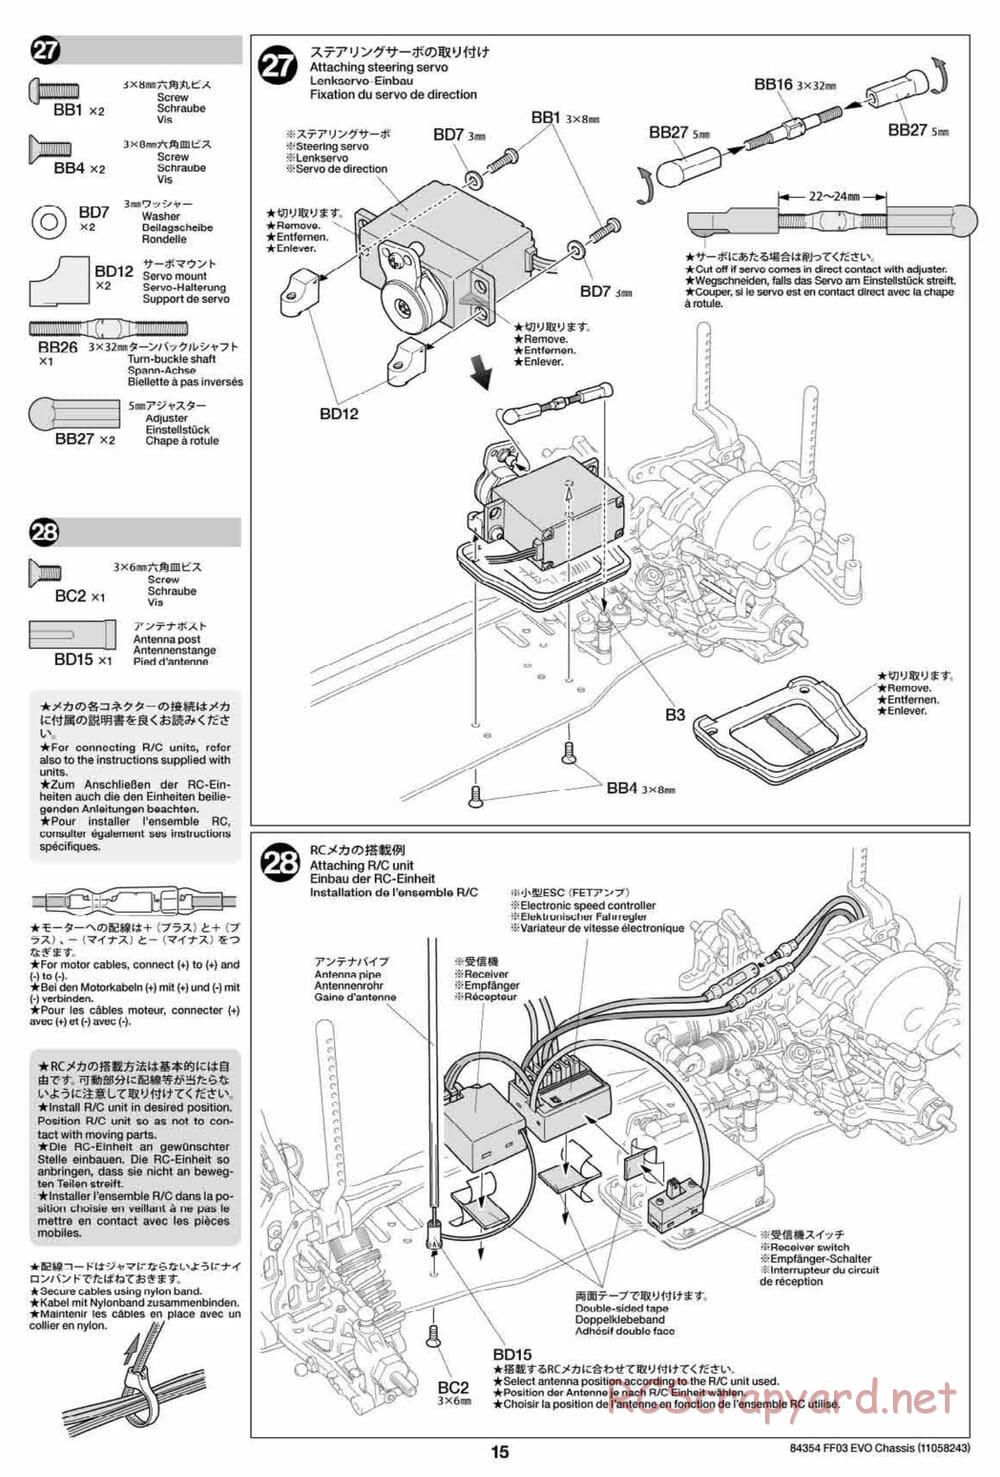 Tamiya - FF-03 Evo Chassis - Manual - Page 15